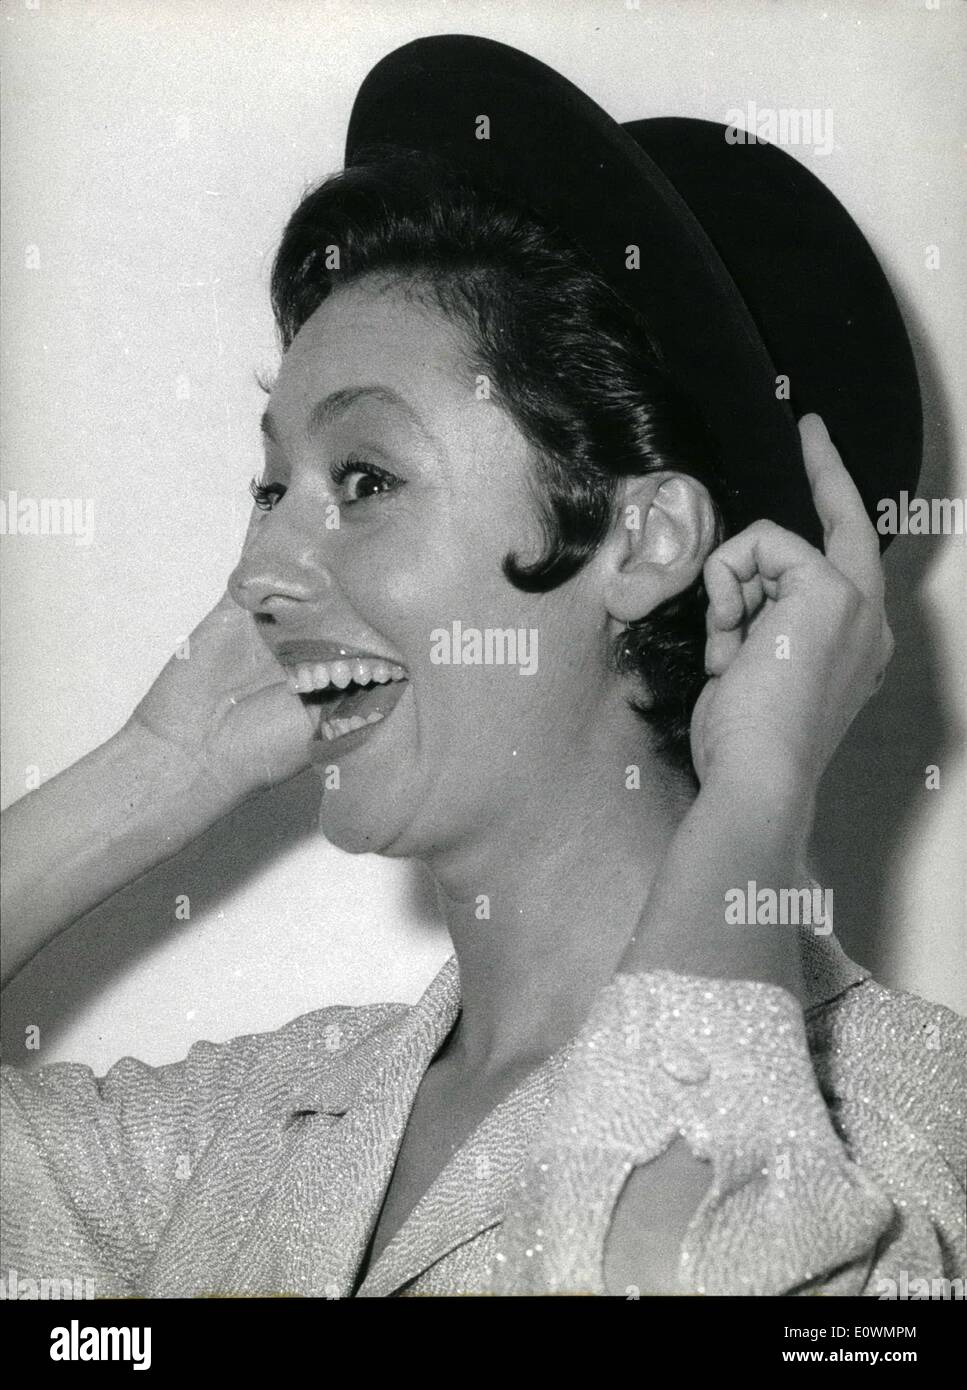 Agosto 08, 1963 - Roma, 1 Agosto 1963 - Caterina Valente, il famoso cantante tedesca, era ospite la scorsa notte al ''Musical Visualizza'' che ha avuto luogo in un teatro aperto a Roma. Po = alcune divertenti espressione del "brava' attrice. Foto Stock